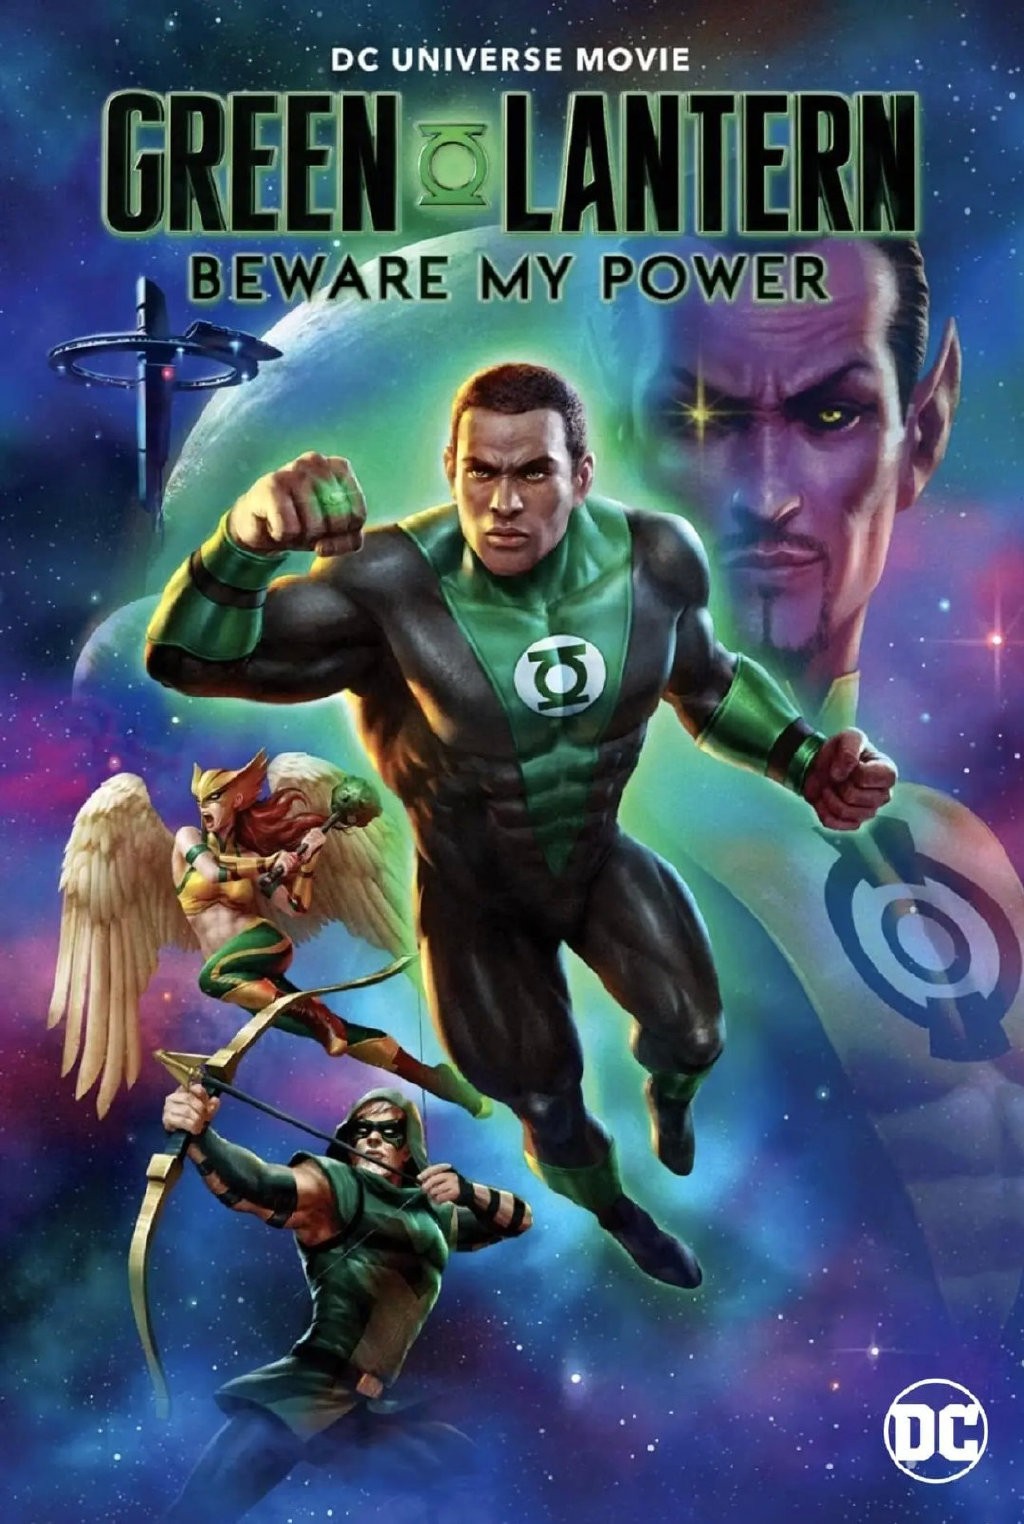 《绿灯侠》新美剧更改创作方向 以黑人超英为主角